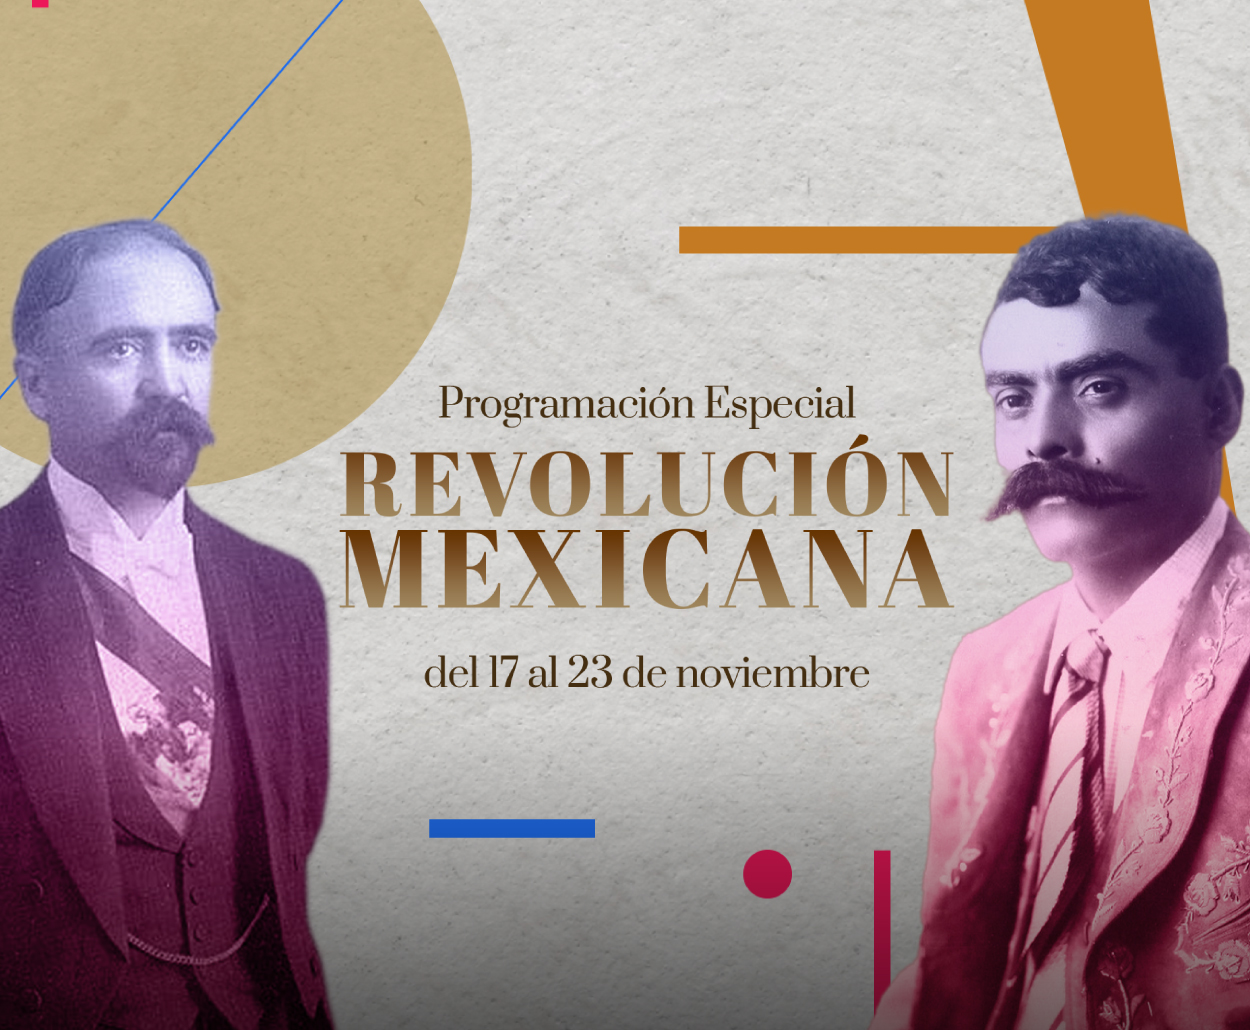 Canal Catorce, del SPR, transmitirá programación especial con motivo de la Revolución Mexicana y el 100 Aniversario luctuoso de Ricardo Flores Magón